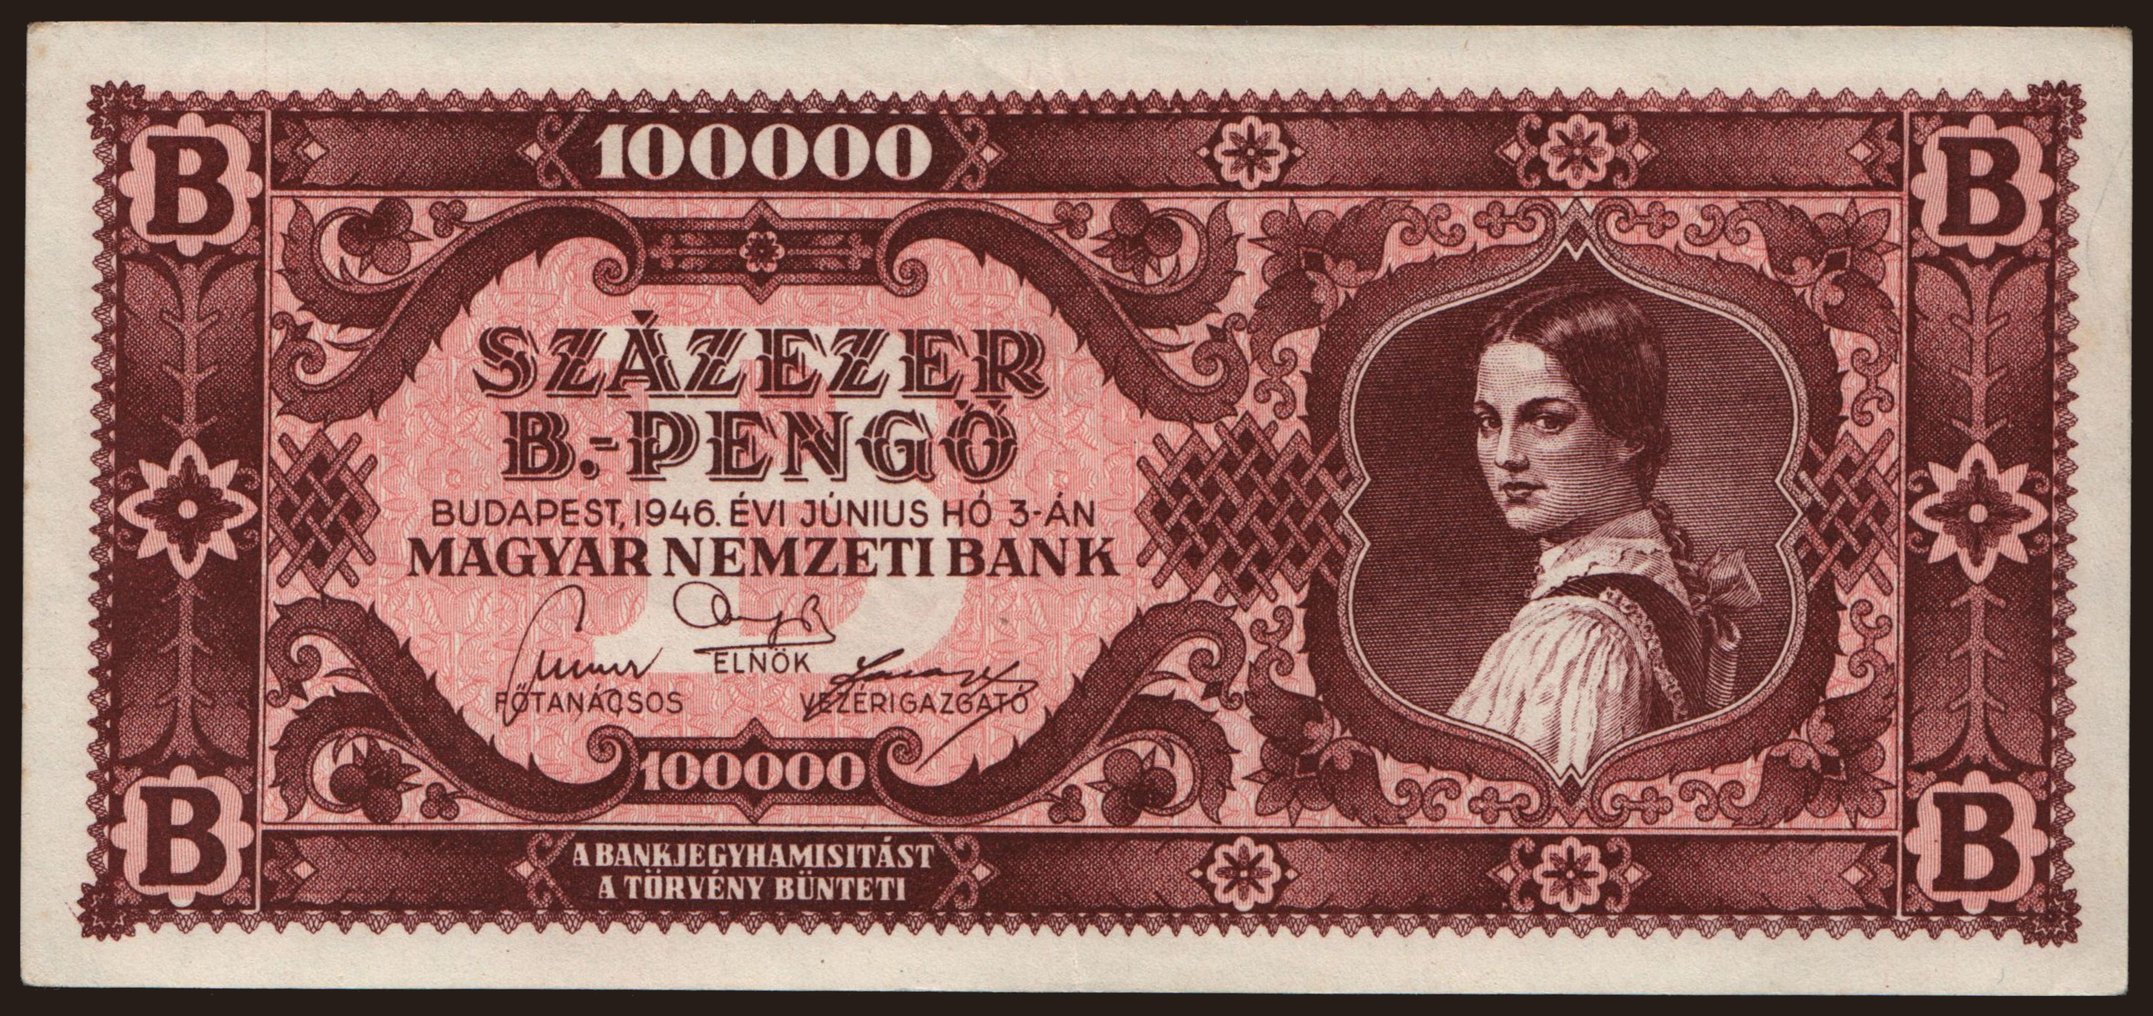 100.000 B-pengő, 1946